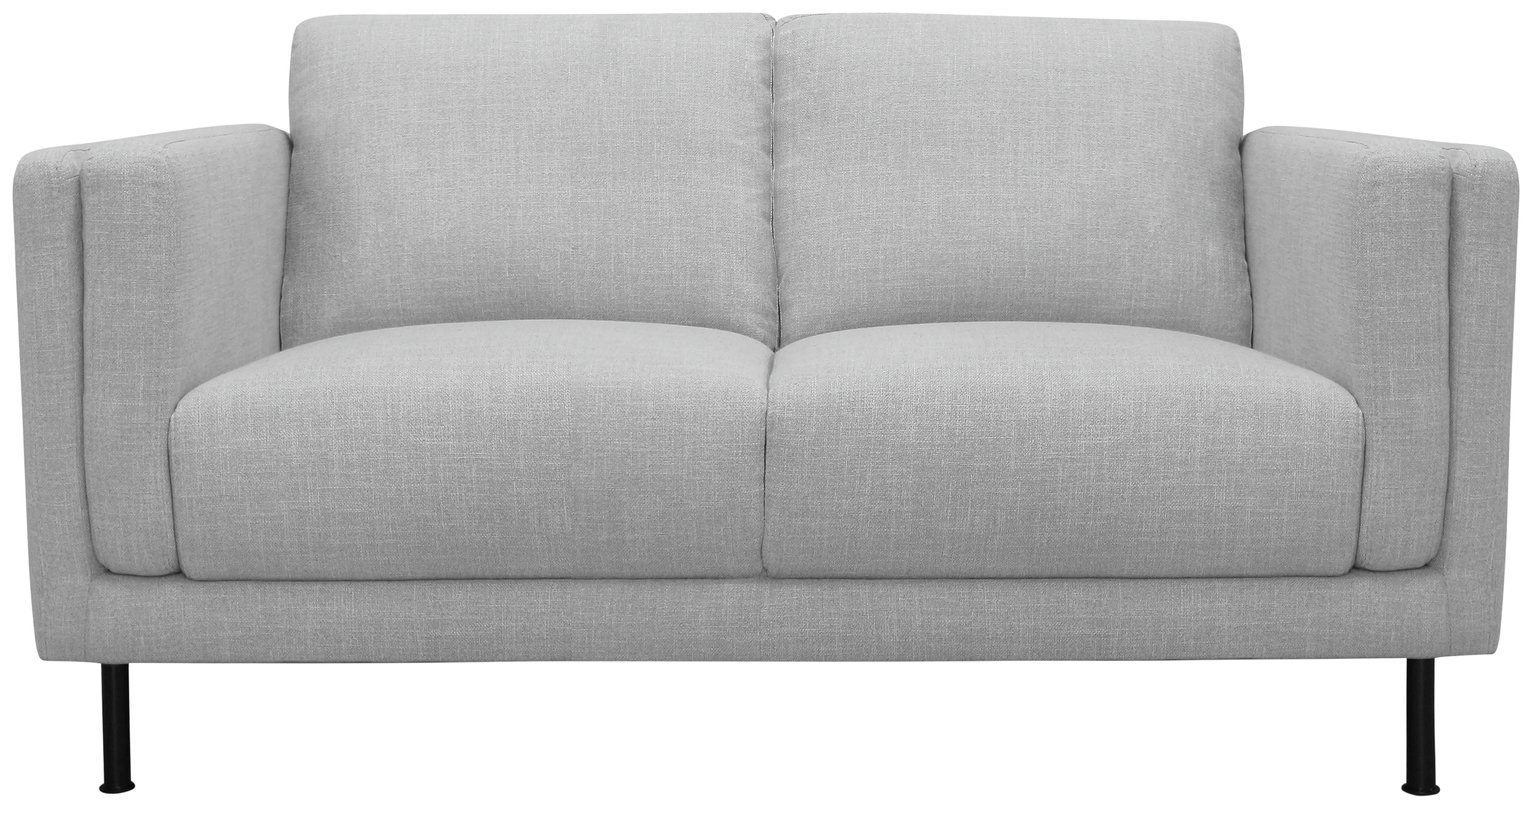 Argos Home Hugo 2 Seater Fabric Sofa Review